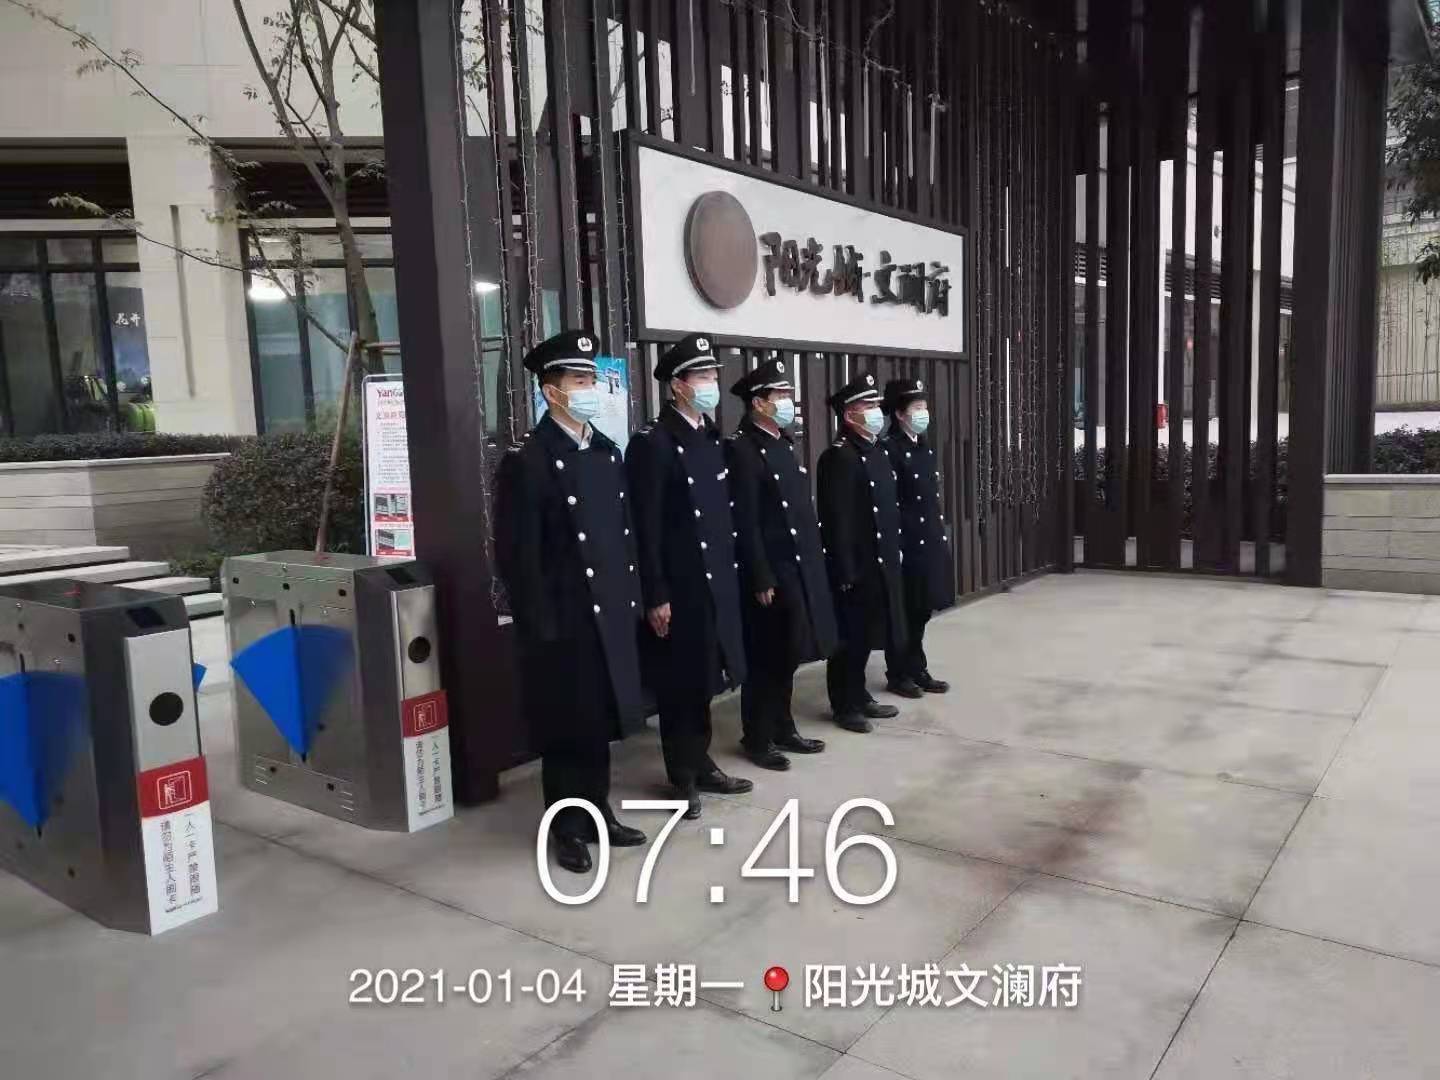 重庆居安师保安服务有限公司 环境照片活动图片